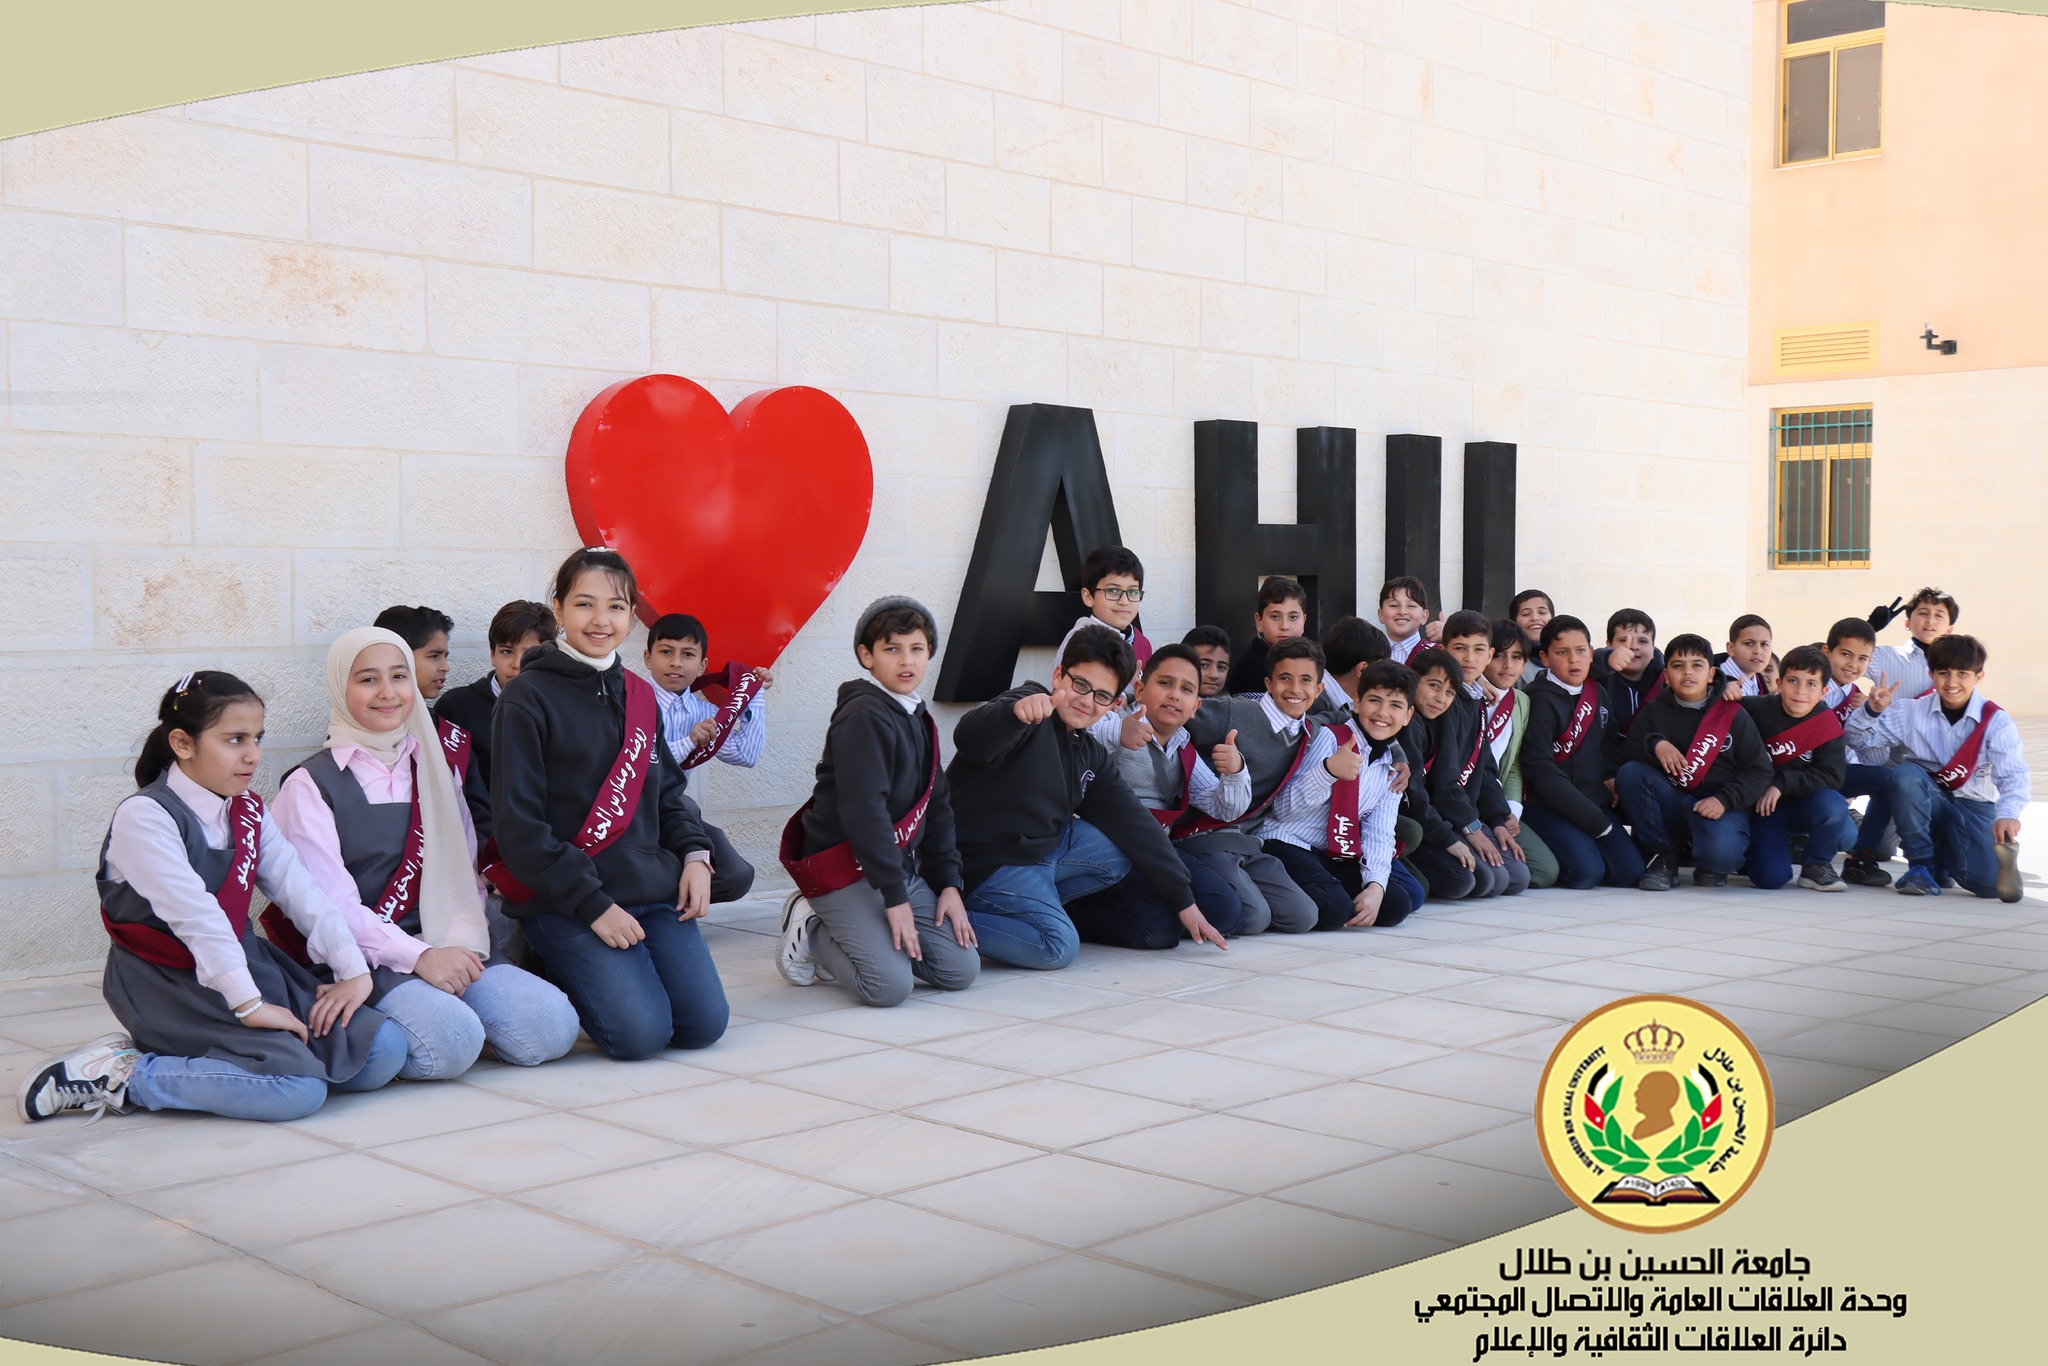 زيارة علمية لطلبة مدرسة الحق يعلو الى جامعة الحسين بن طلال